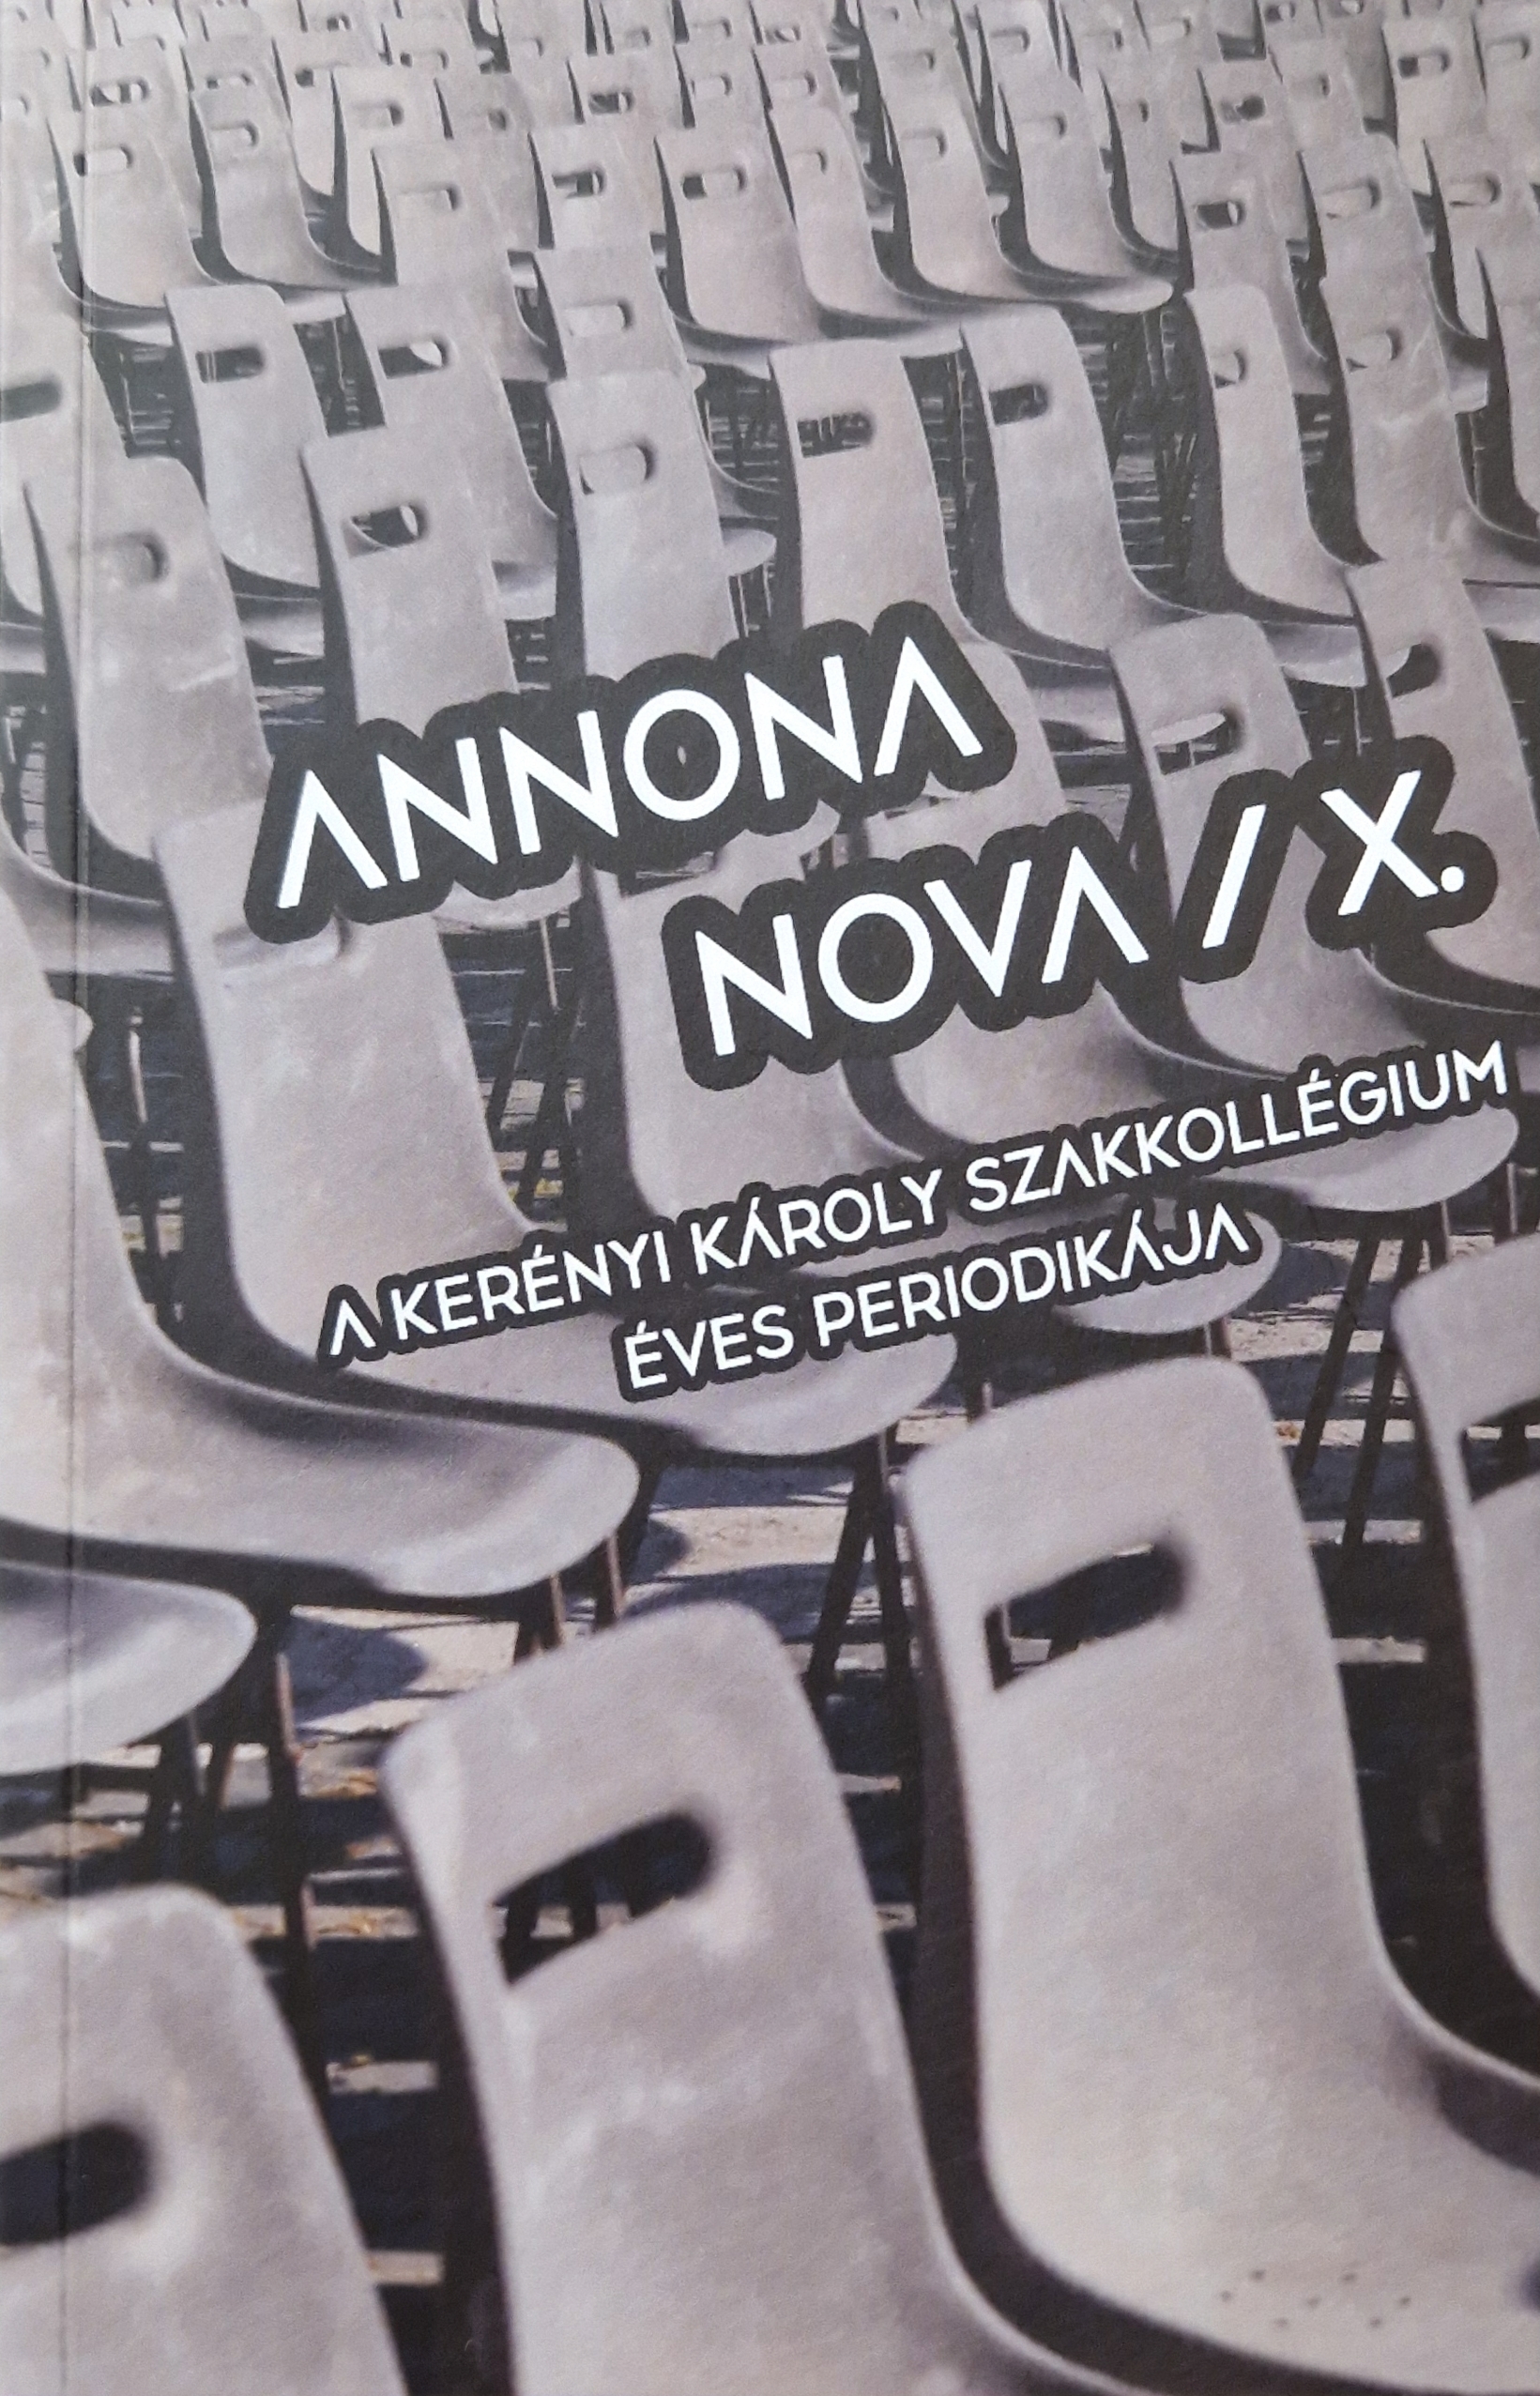 					View No. X (2019): Annona Nova – A Kerényi Károly Szakkollégium éves periodikája
				